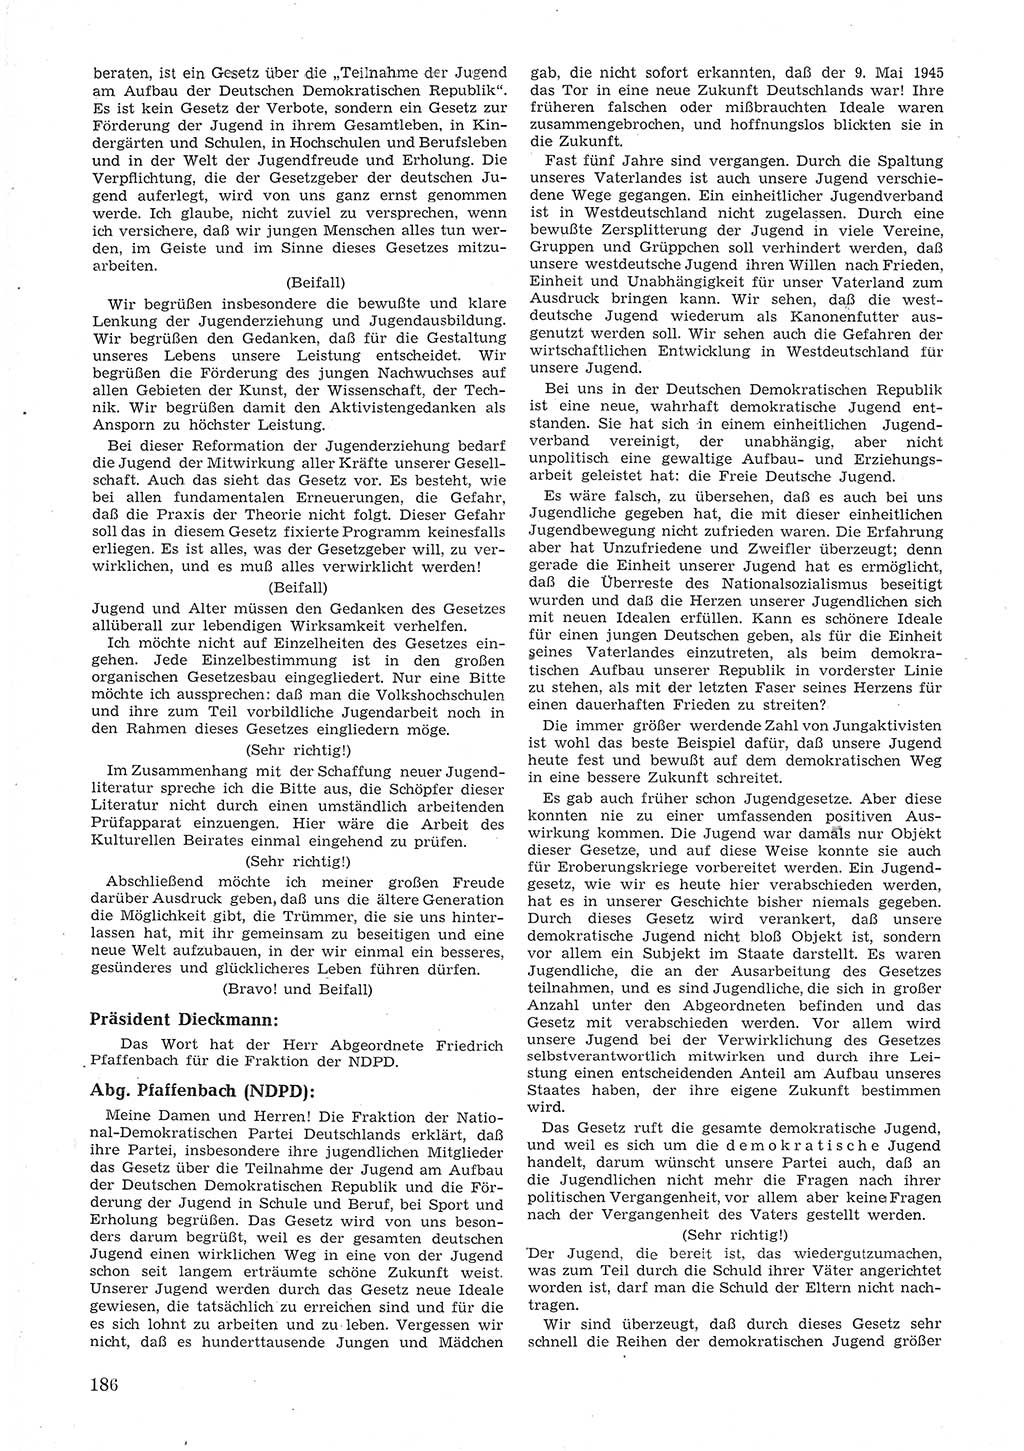 Provisorische Volkskammer (VK) der Deutschen Demokratischen Republik (DDR) 1949-1950, Dokument 198 (Prov. VK DDR 1949-1950, Dok. 198)